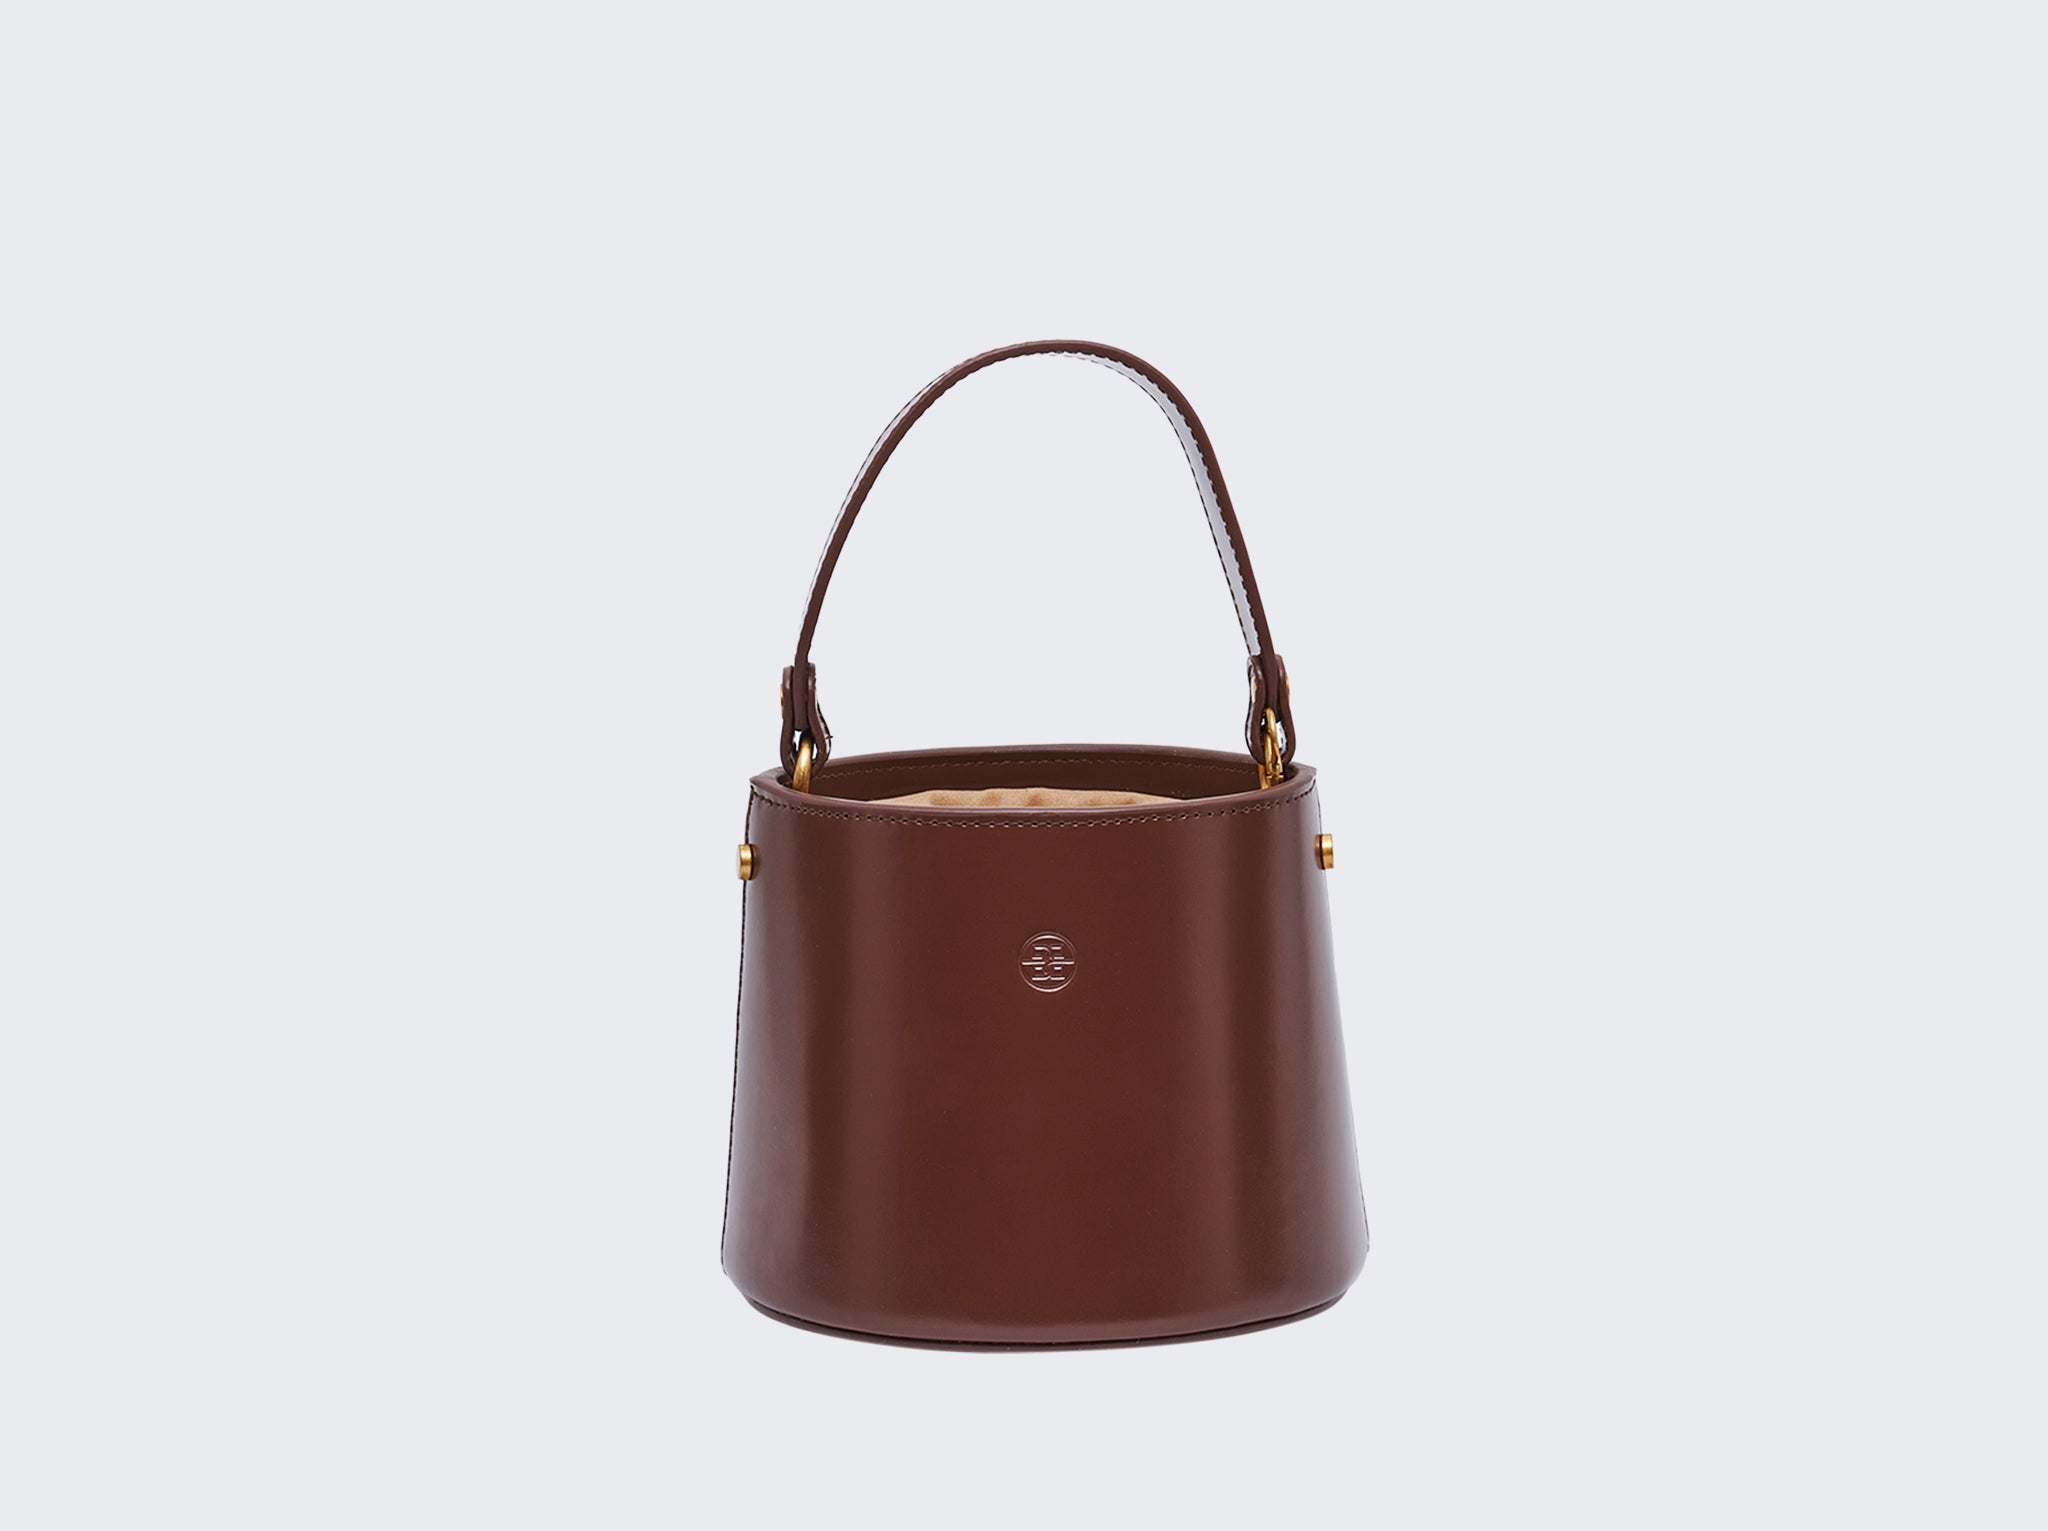 The Antoinette Bucket Bag